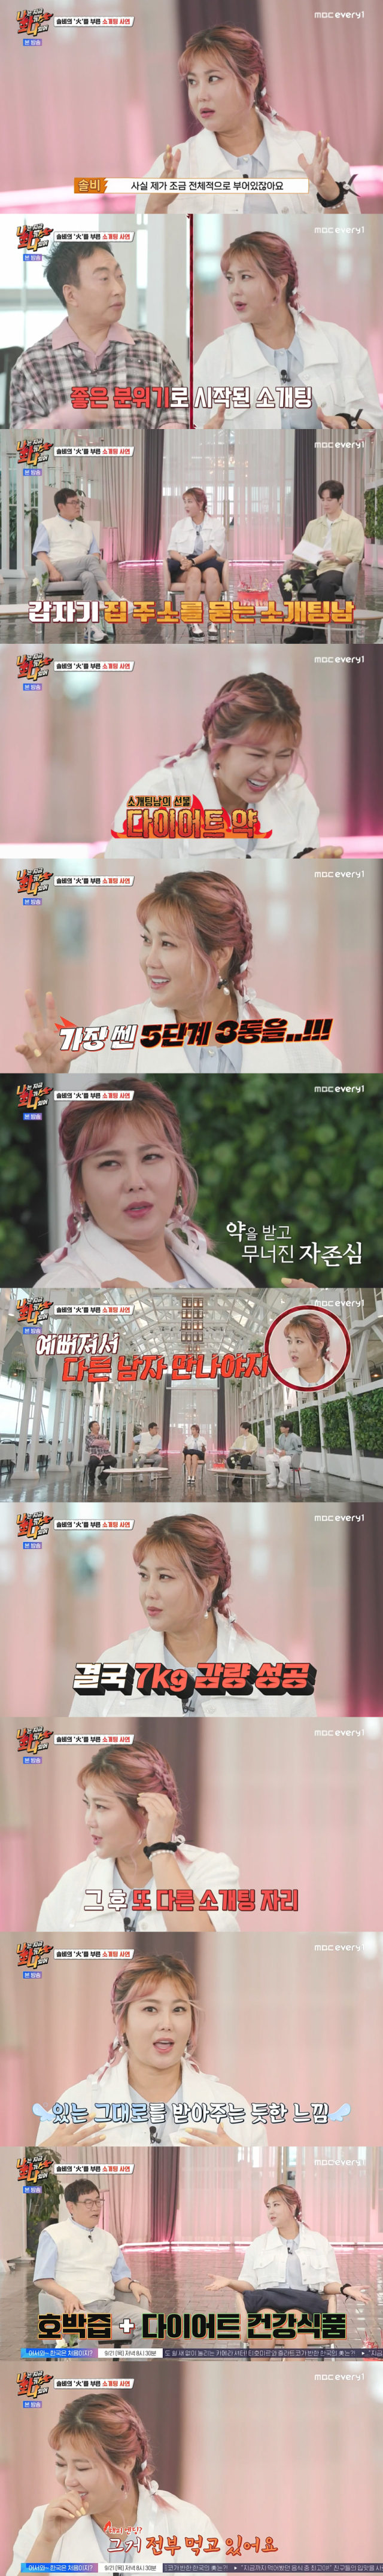 소개팅남들의 만행을 공개한 가수 겸 화가 솔비/MBC every1, 라이프타임채널 '나는 지금 화가 나있어' 방송